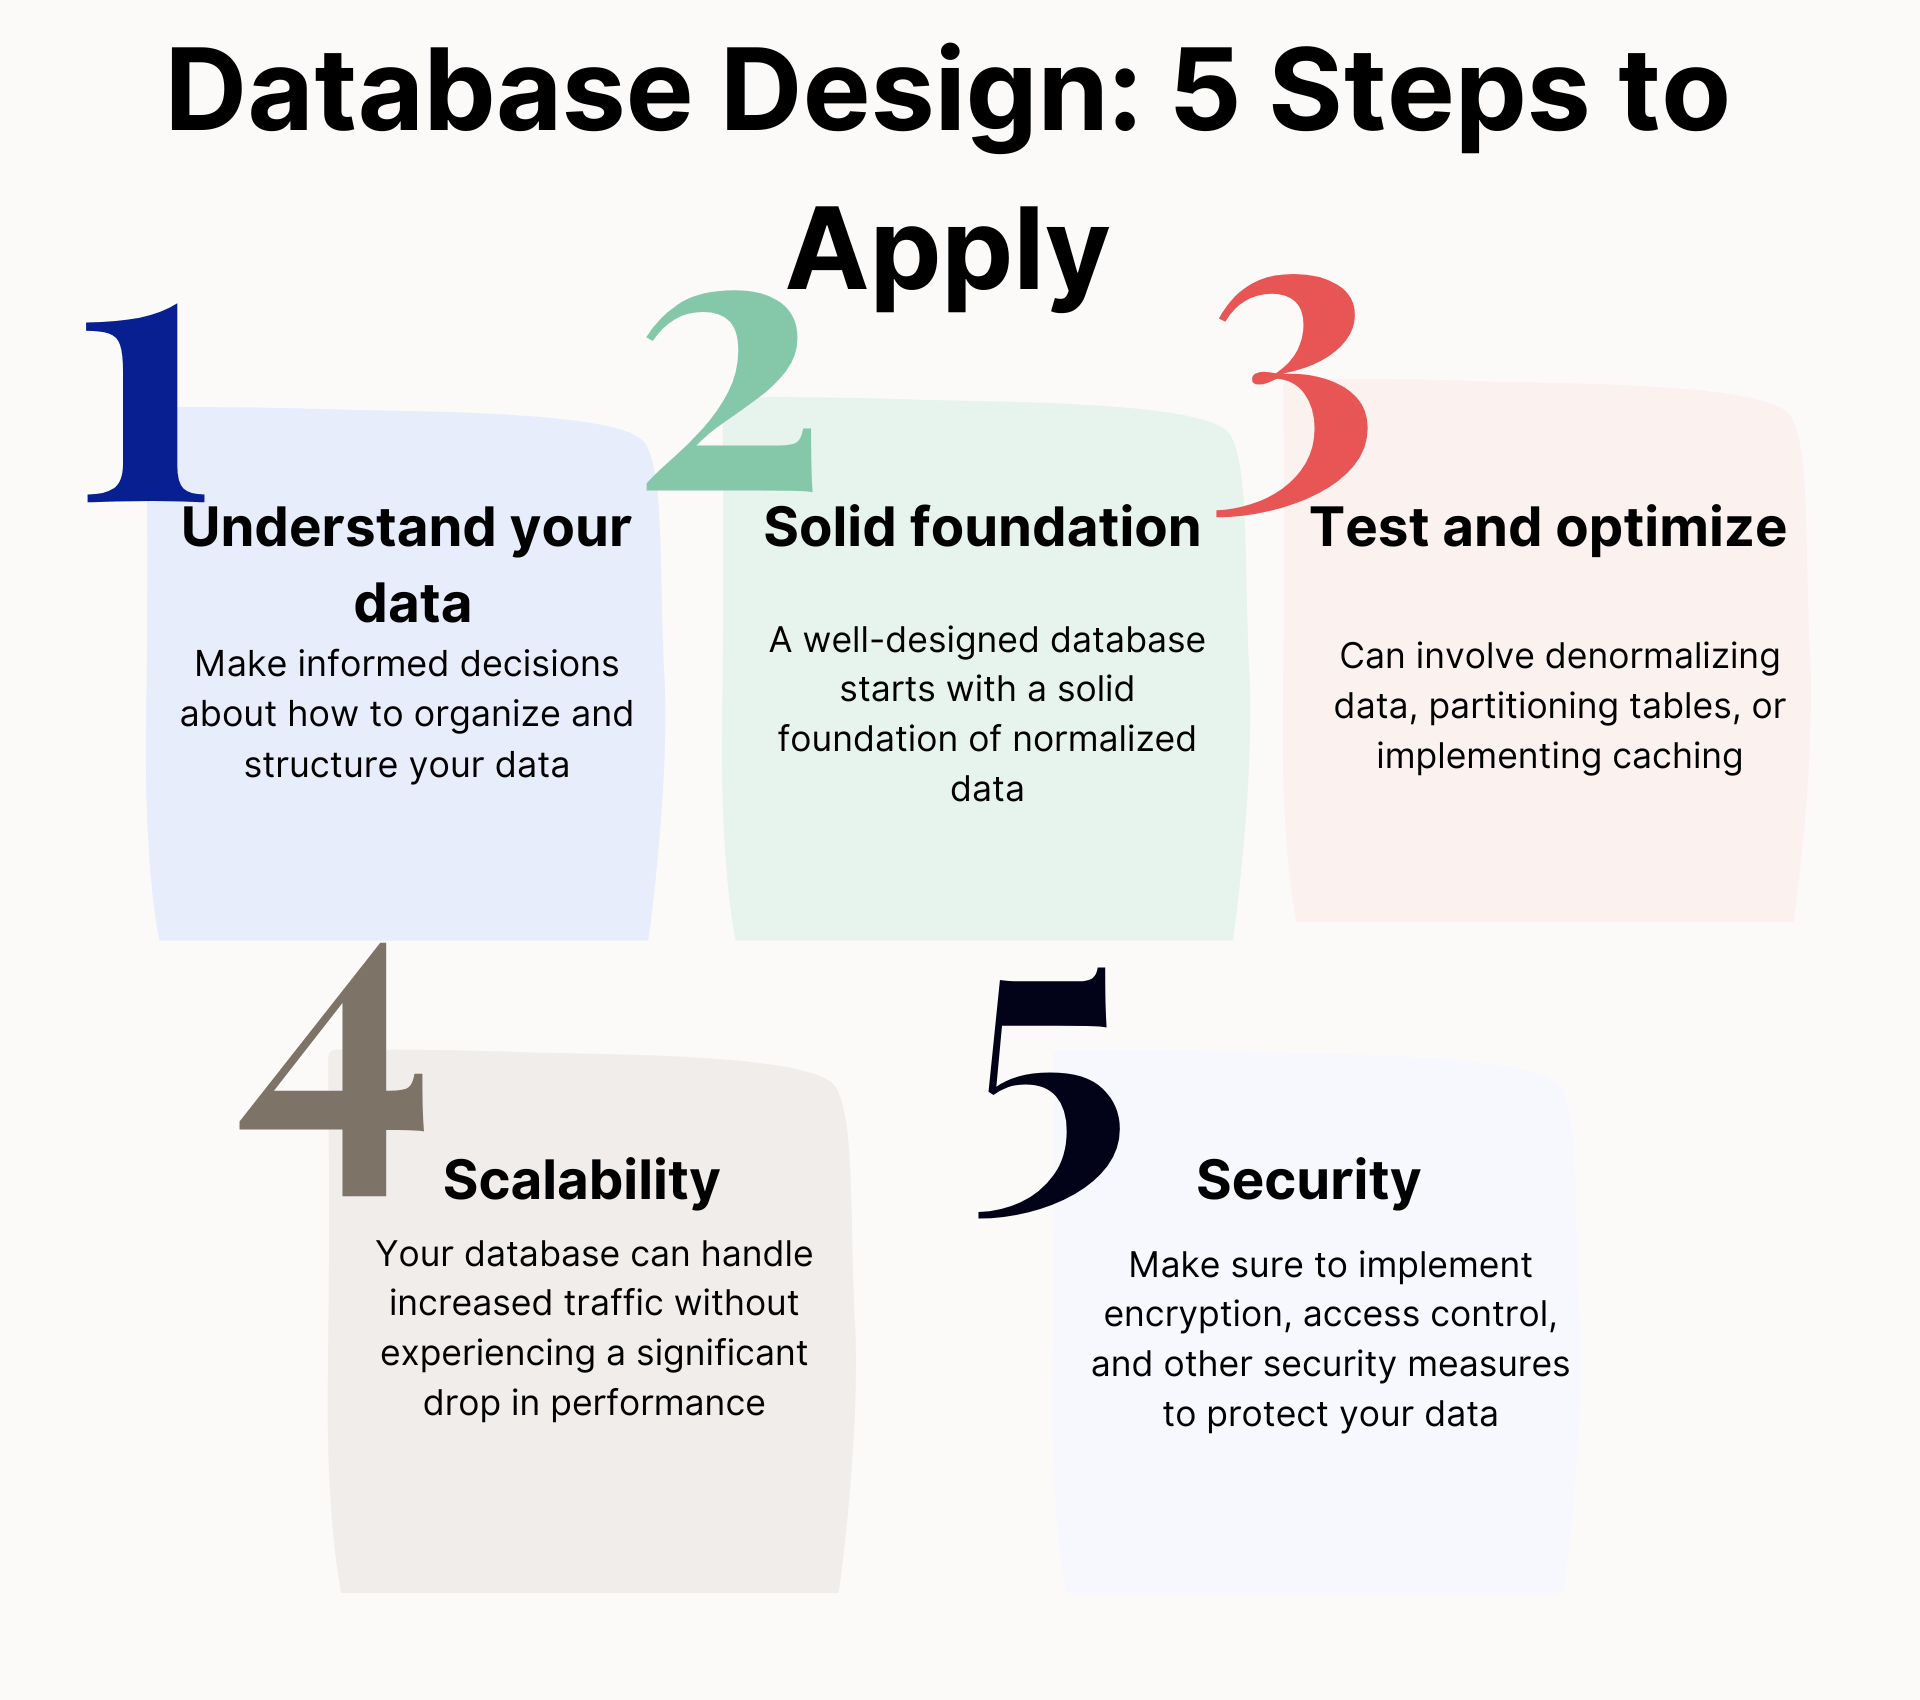 database design in 5 steps